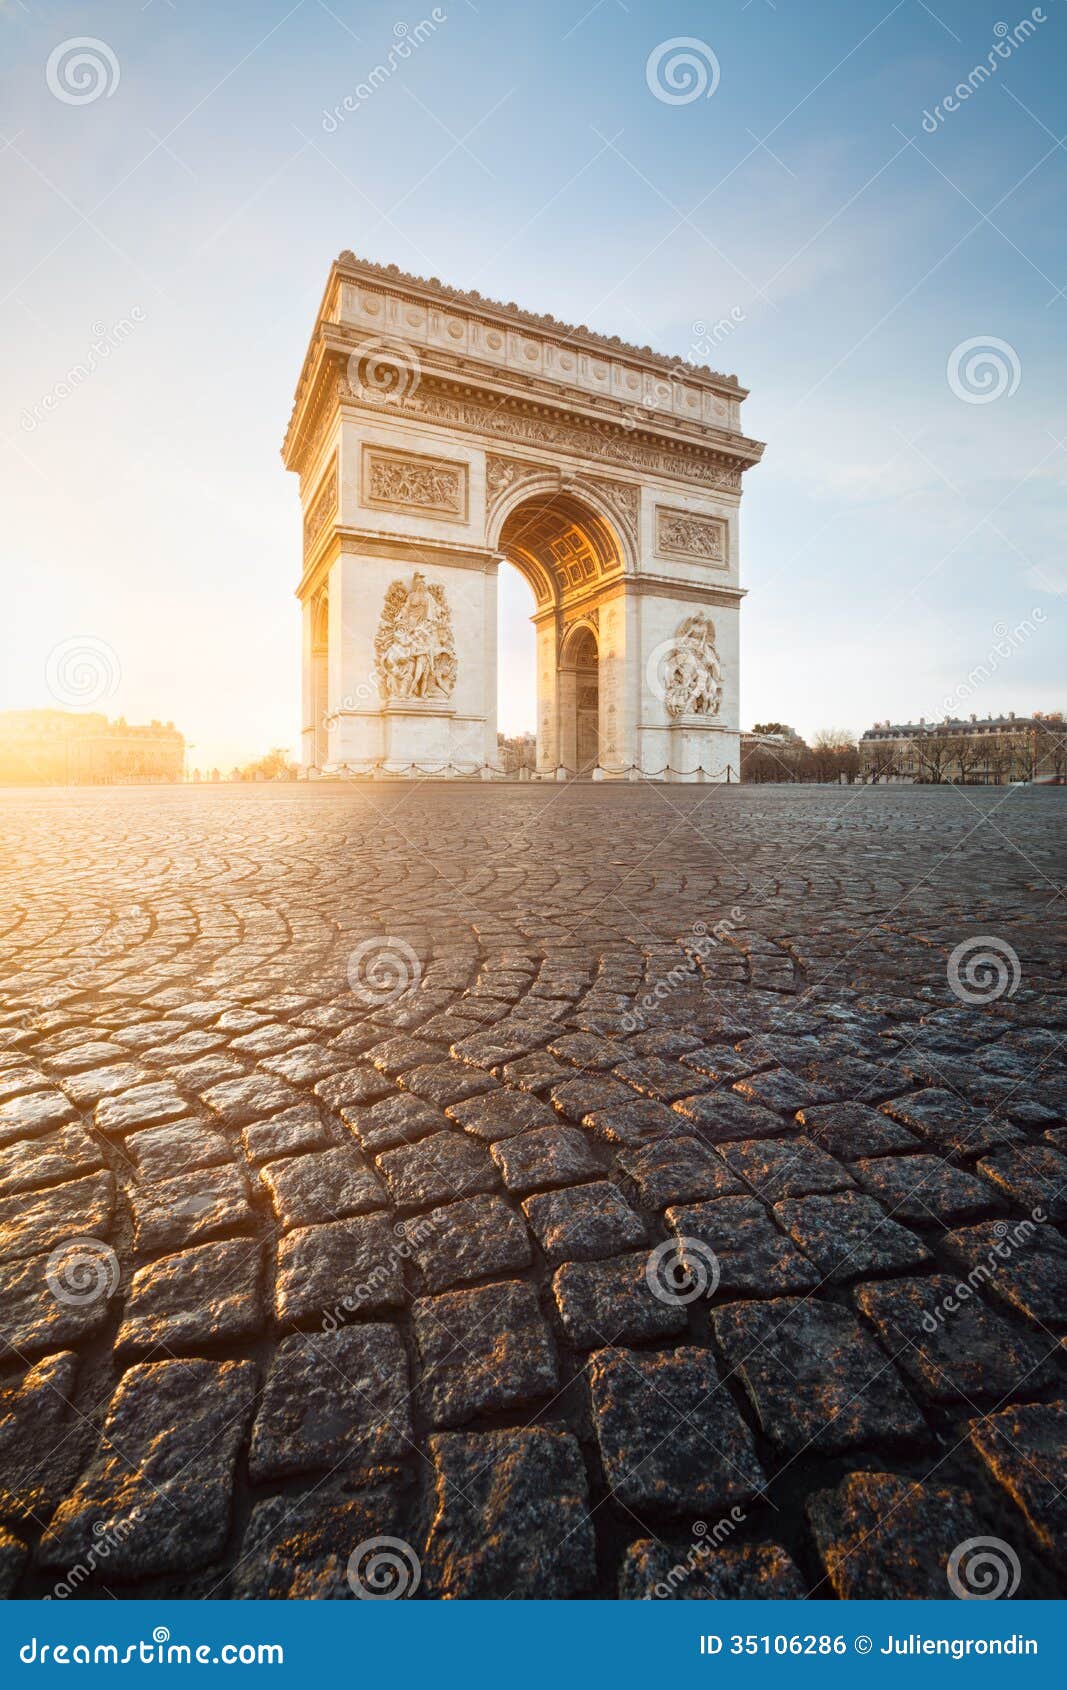 arc de triomphe, paris